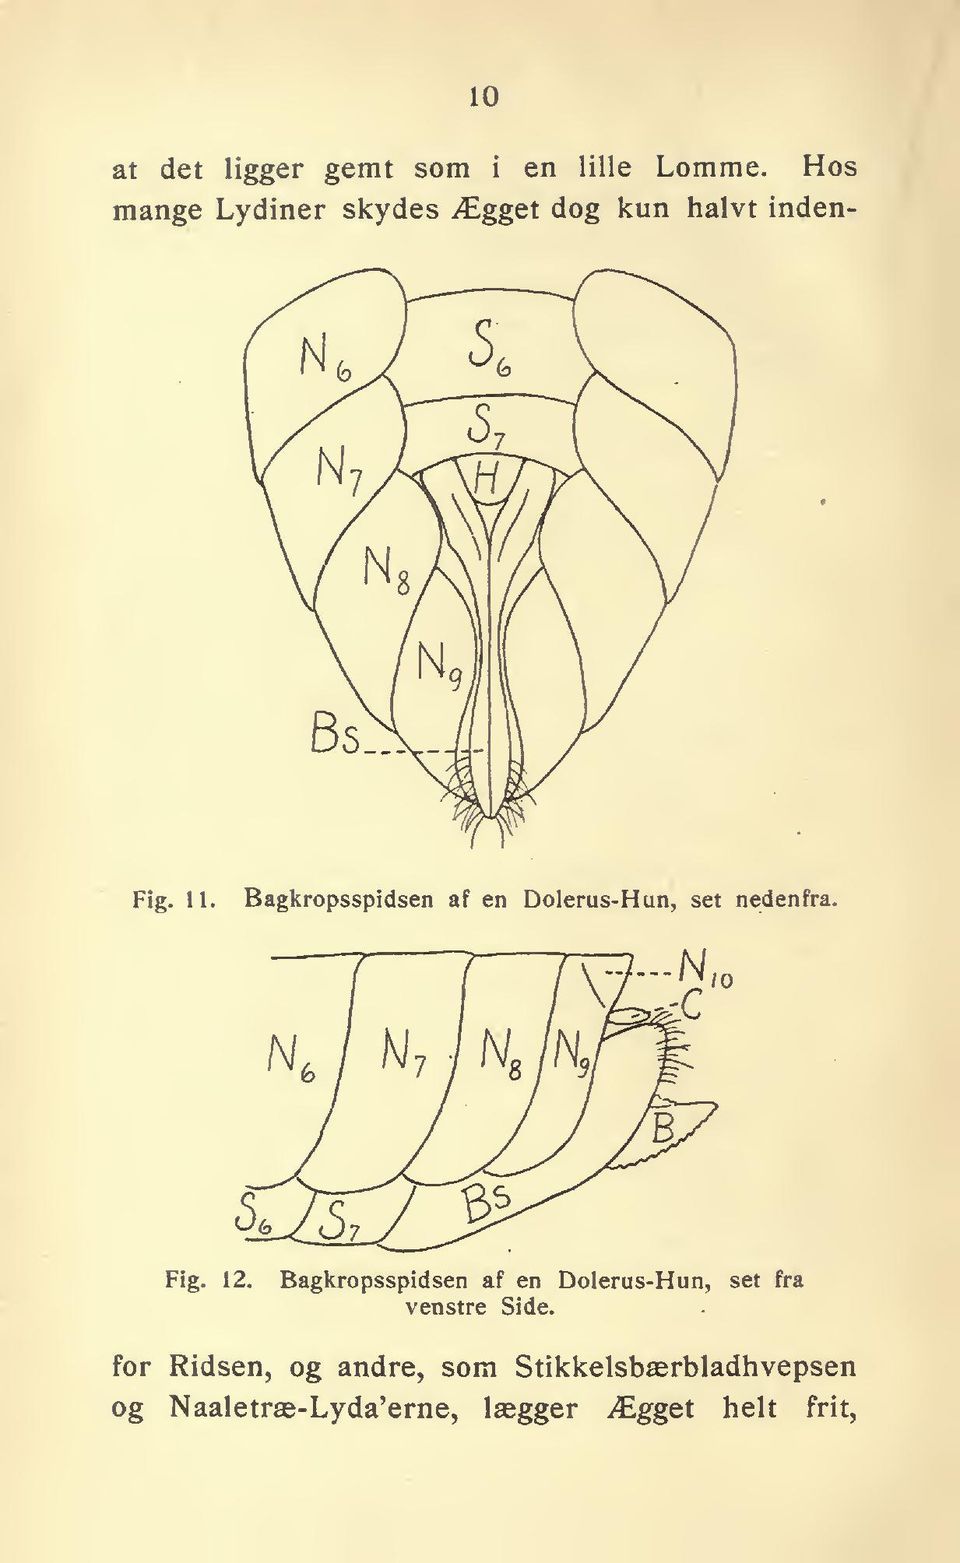 Bagkropsspidsen af en Dolerus-Hun, set nedenfra. N. 10 Fig. 12.